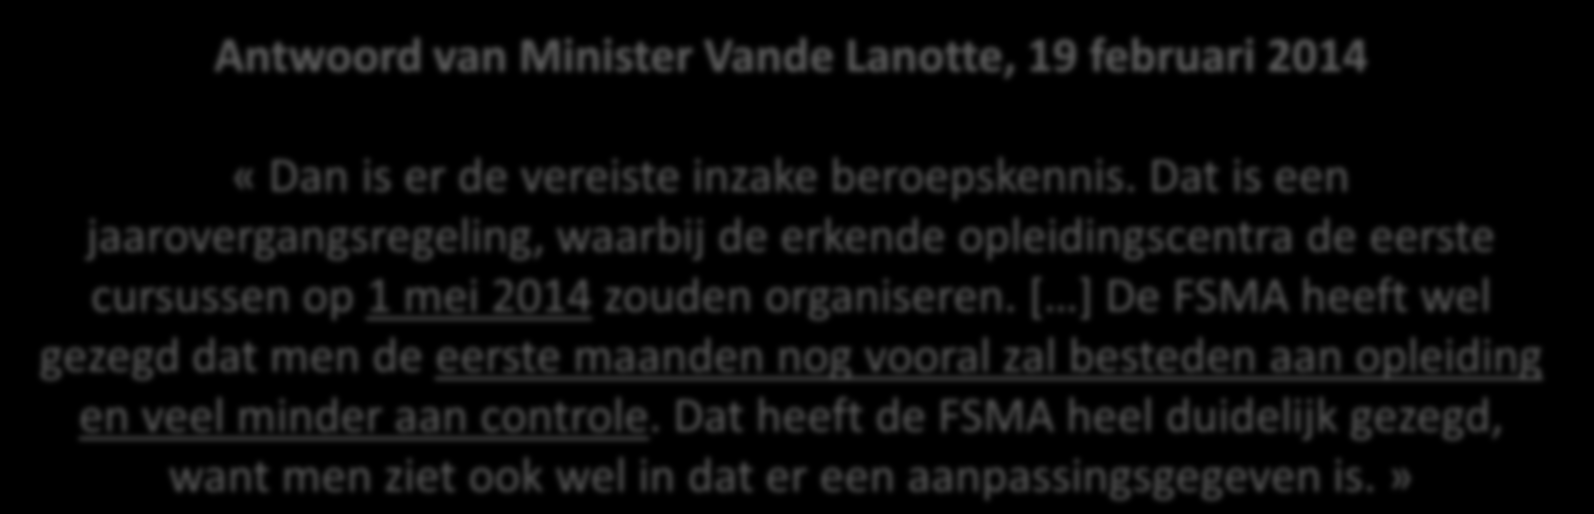 Welke regels worden op mij van toepassing? 7 maart 2014 Koninklijke besluiten van 21 februari 2014 Antwoord van Minister Vande Lanotte, 19 februari 2014 «Dan is er de vereiste inzake beroepskennis.